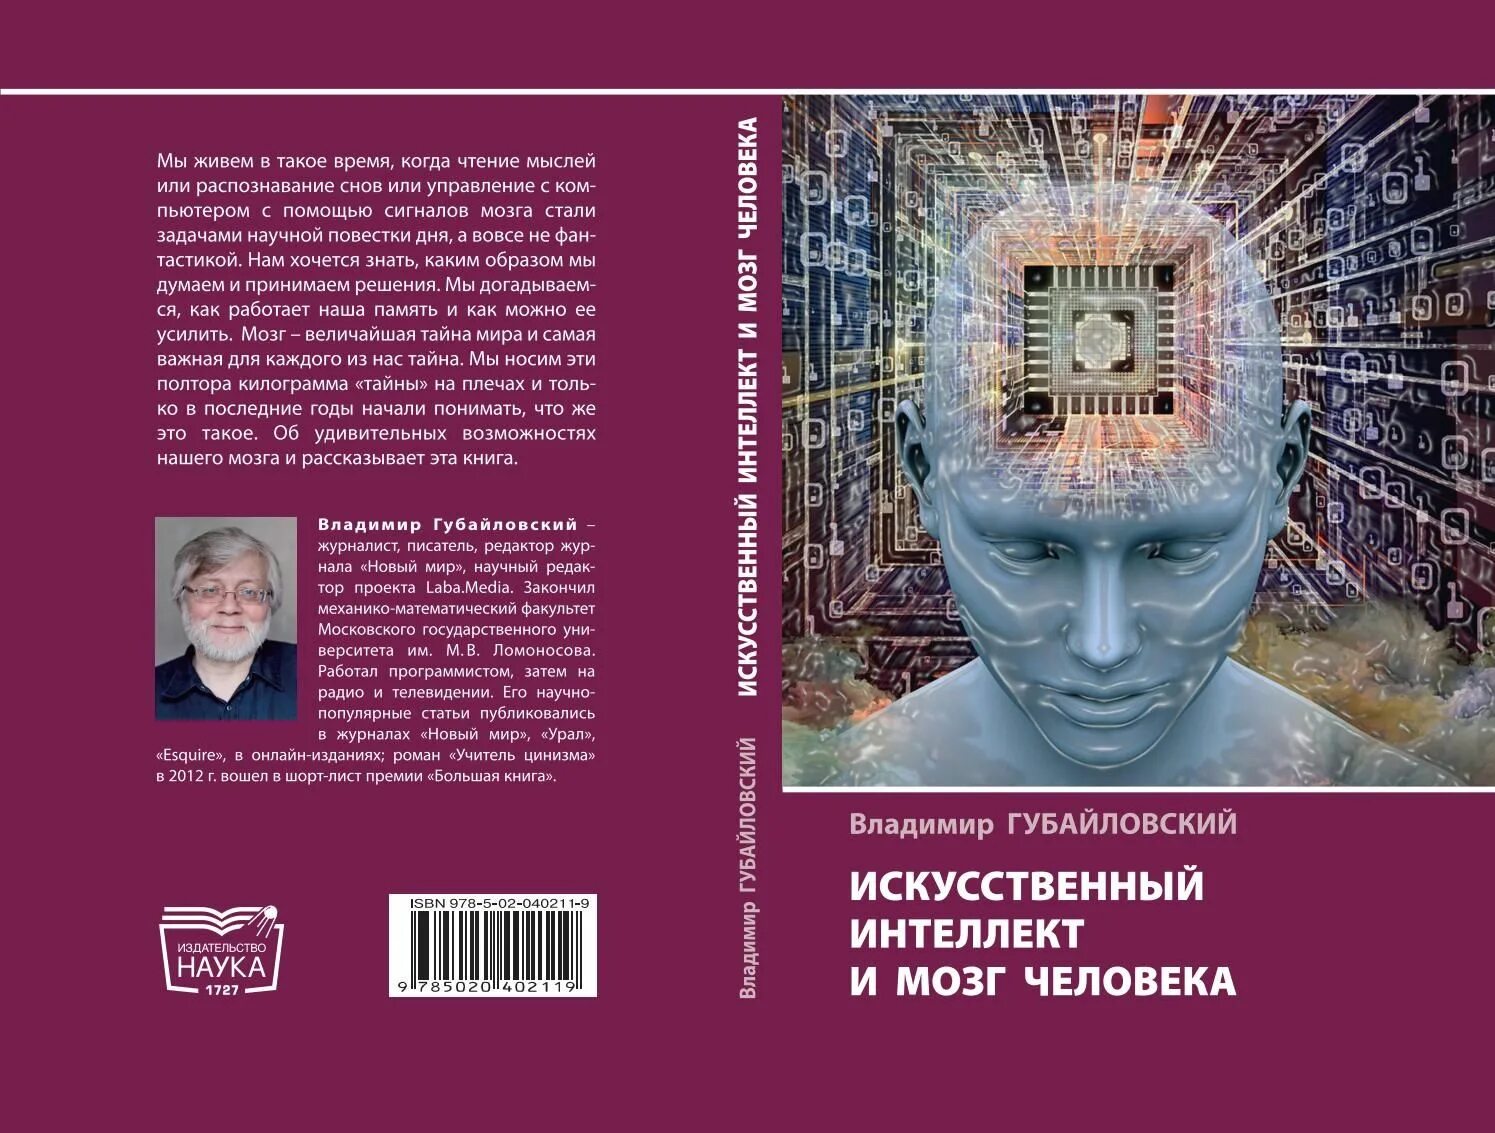 Книга искусственный интеллект. Губайловский искусственный интеллект и мозг человека. Книга про мозг человека. Книги по искусственному интеллекту.